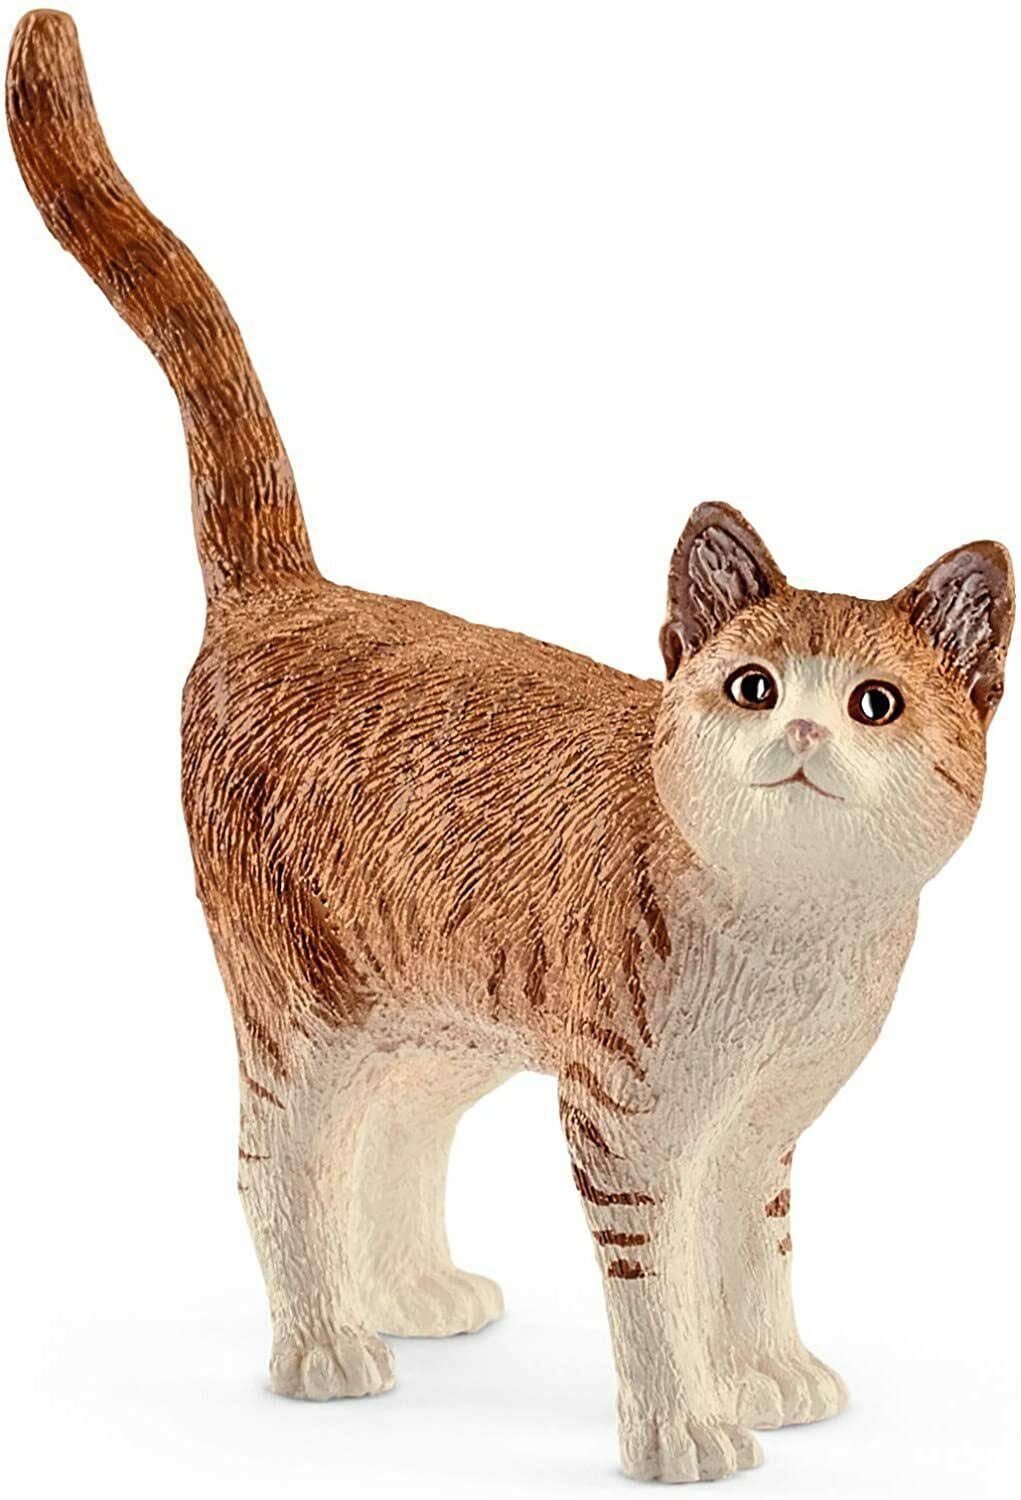 Schleich 13836 Farm Life Animals Toy Figurine - Cat